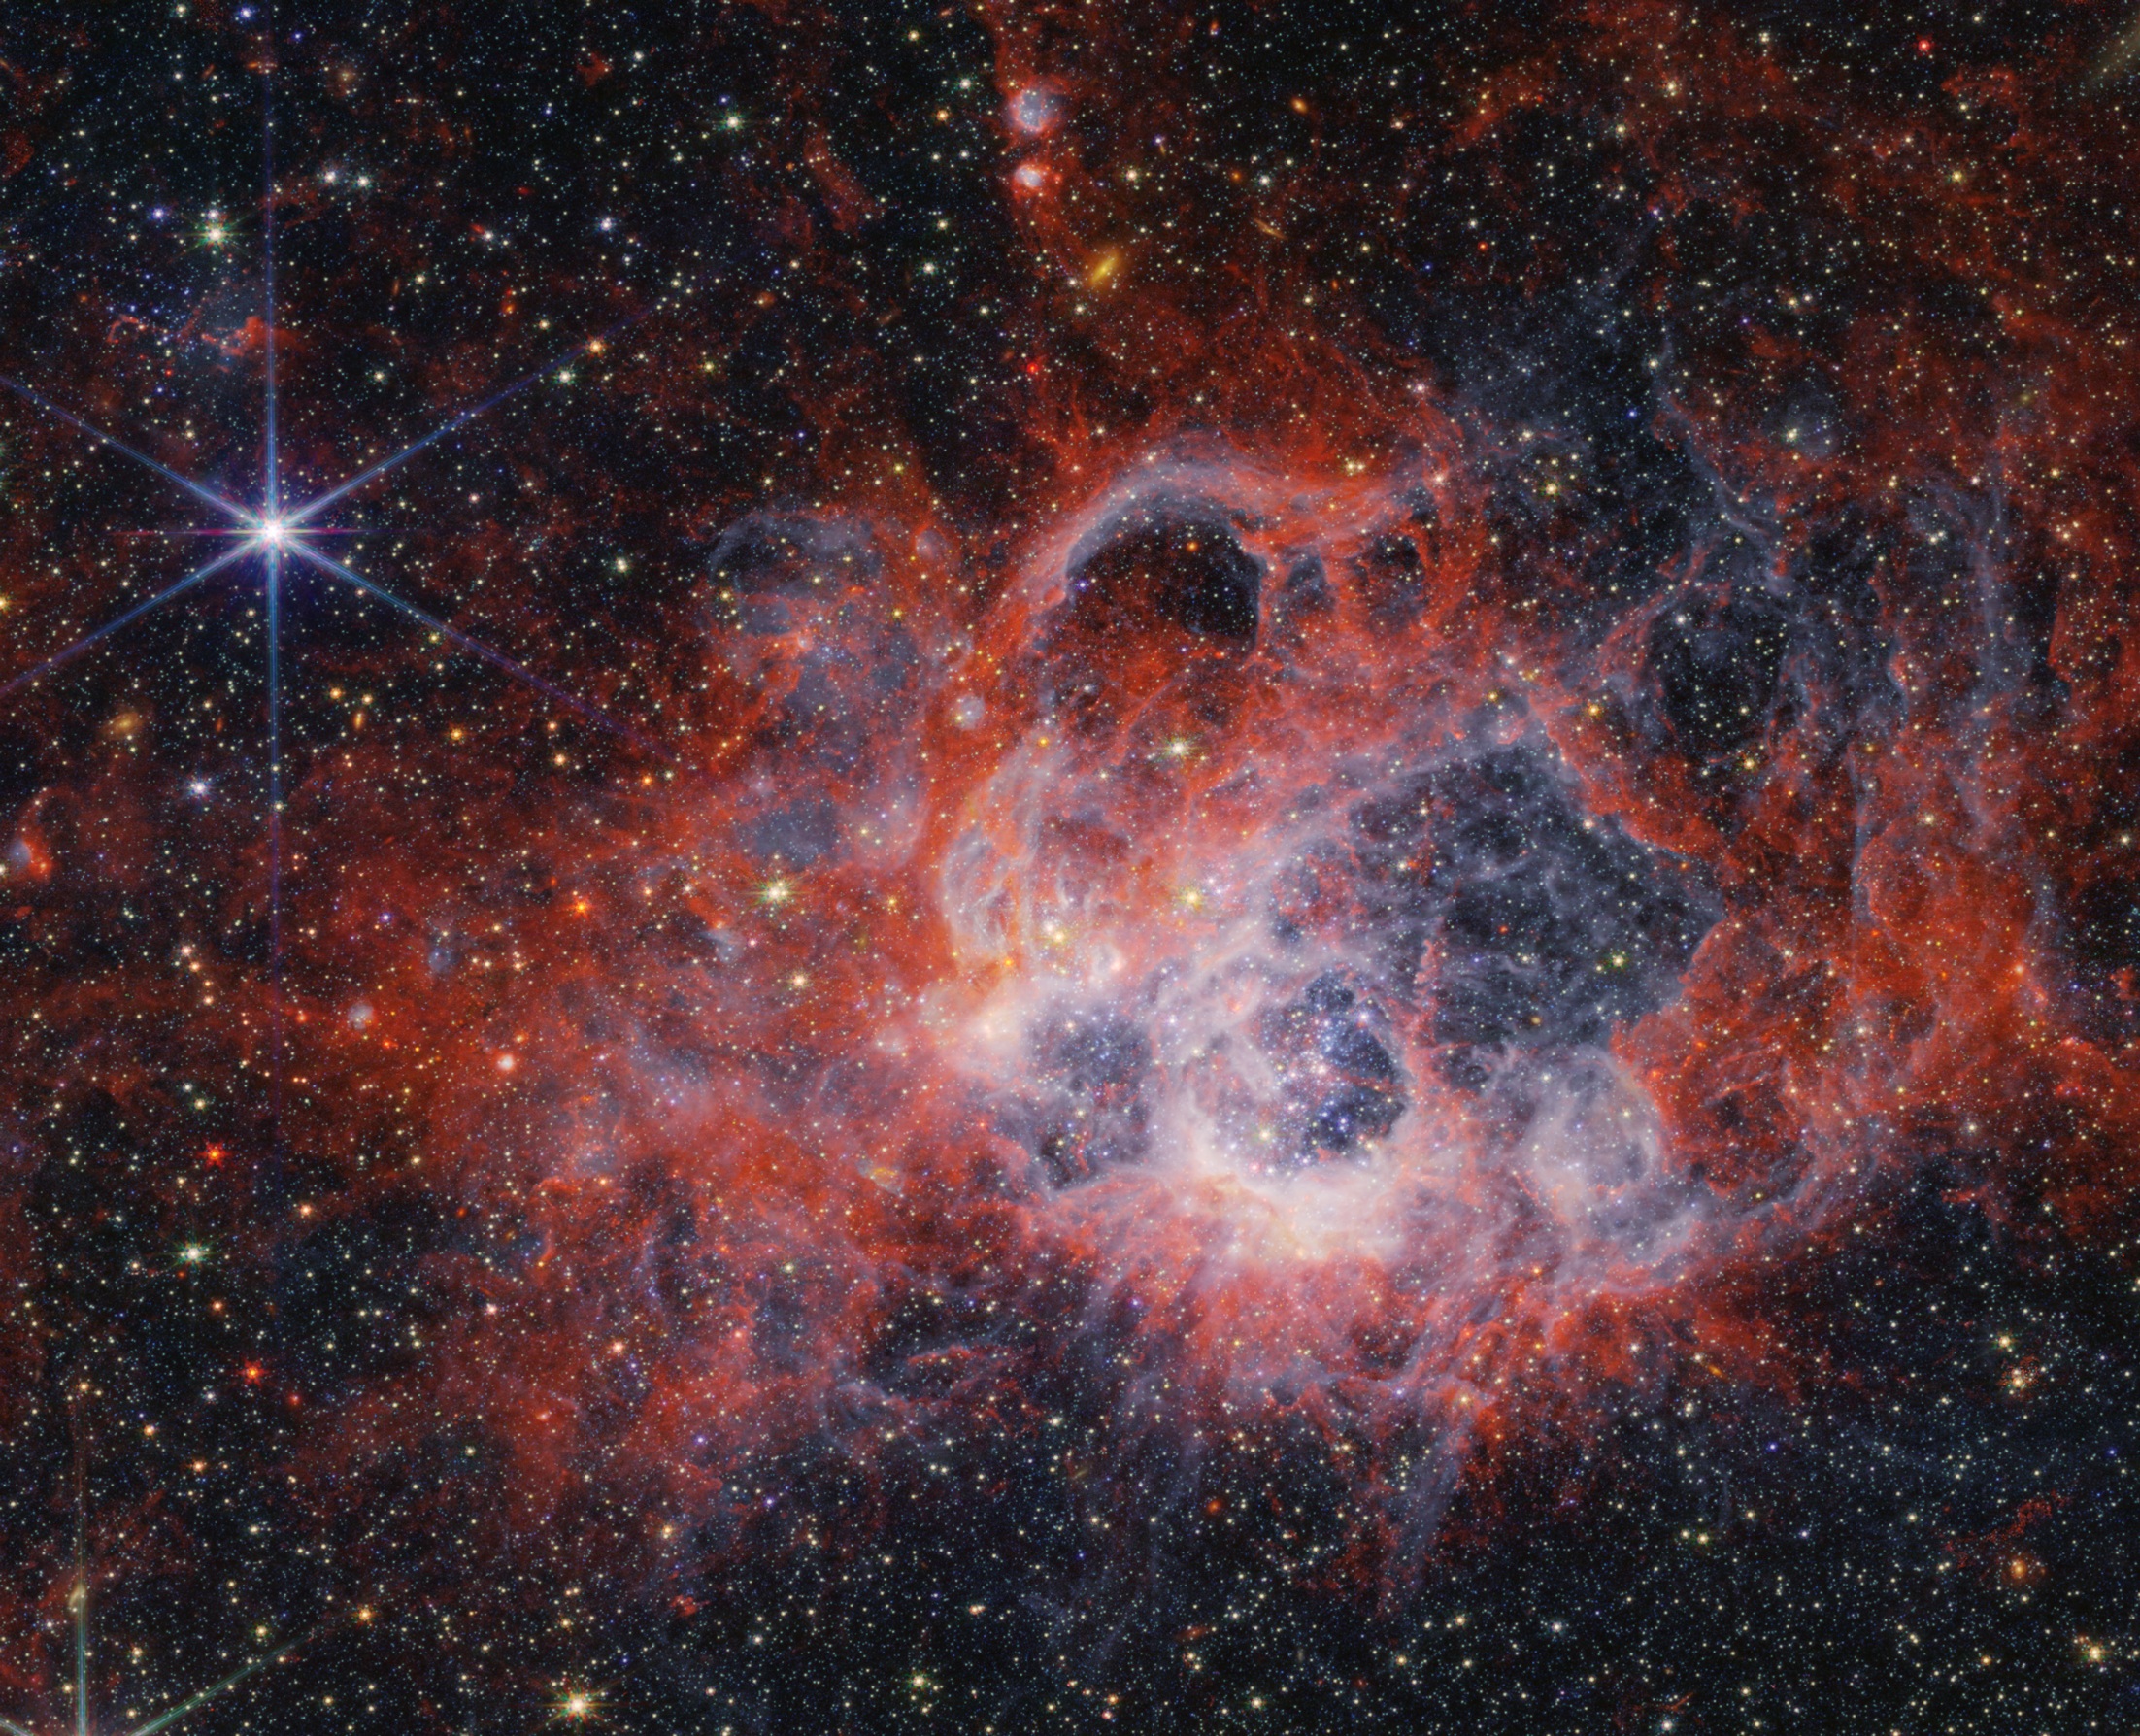 Cette image prise par la NIRCam (Near-Infrared Camera) du télescope spatial James-Webb de la Nasa de la région de formation d'étoiles NGC 604 montre comment les vents stellaires provenant de jeunes étoiles brillantes et chaudes creusent des cavités dans les gaz et la poussière environnants. © Nasa, ESA, ASC, STScI